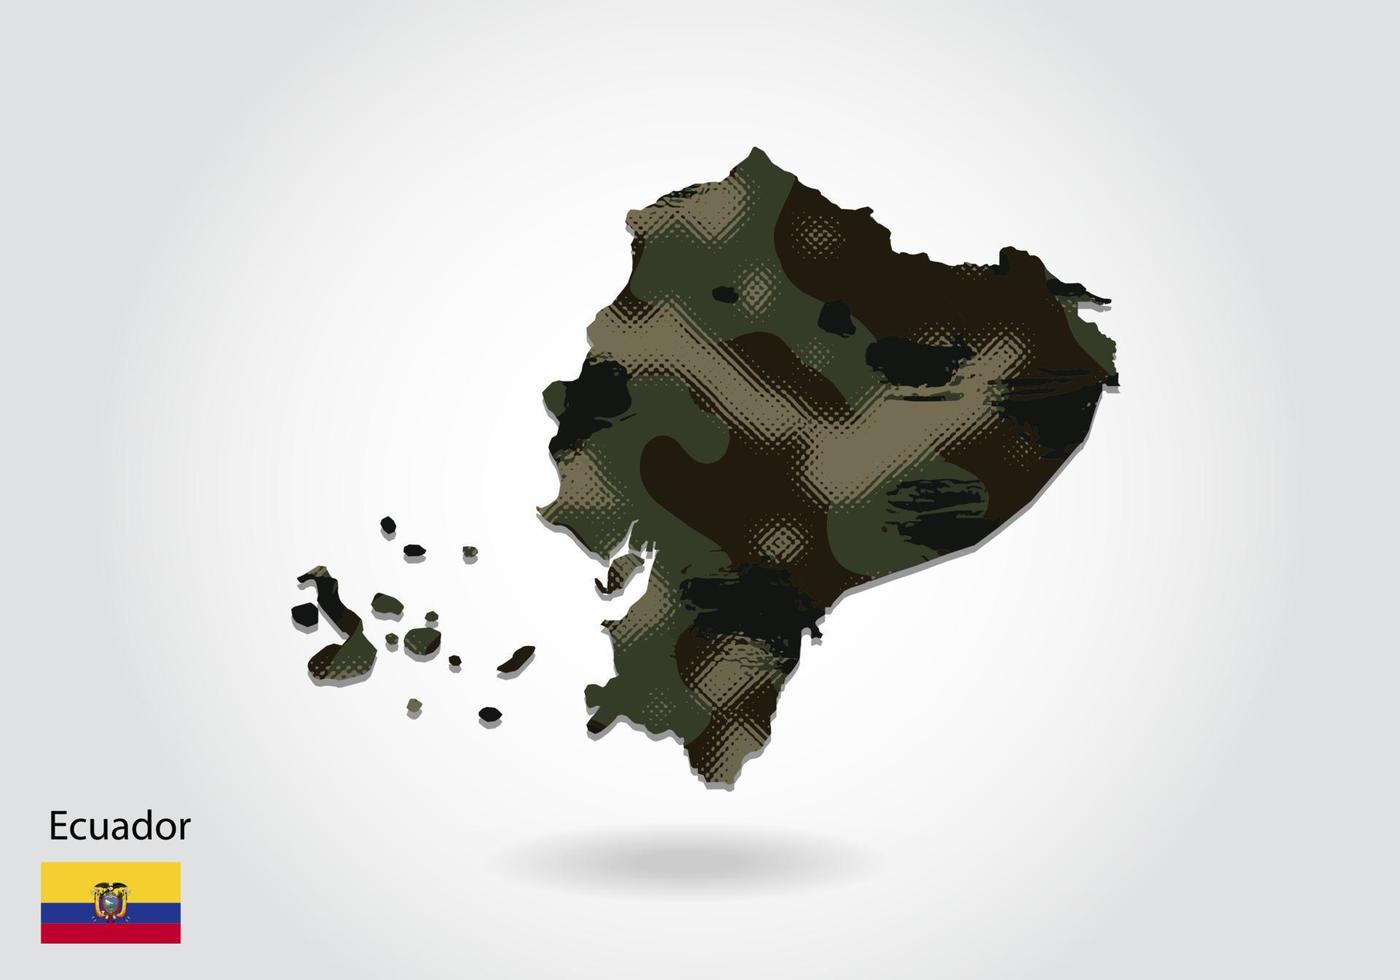 mapa do Equador com padrão de camuflagem, floresta - textura verde no mapa. conceito militar para exército, soldado e guerra. brasão, bandeira. vetor